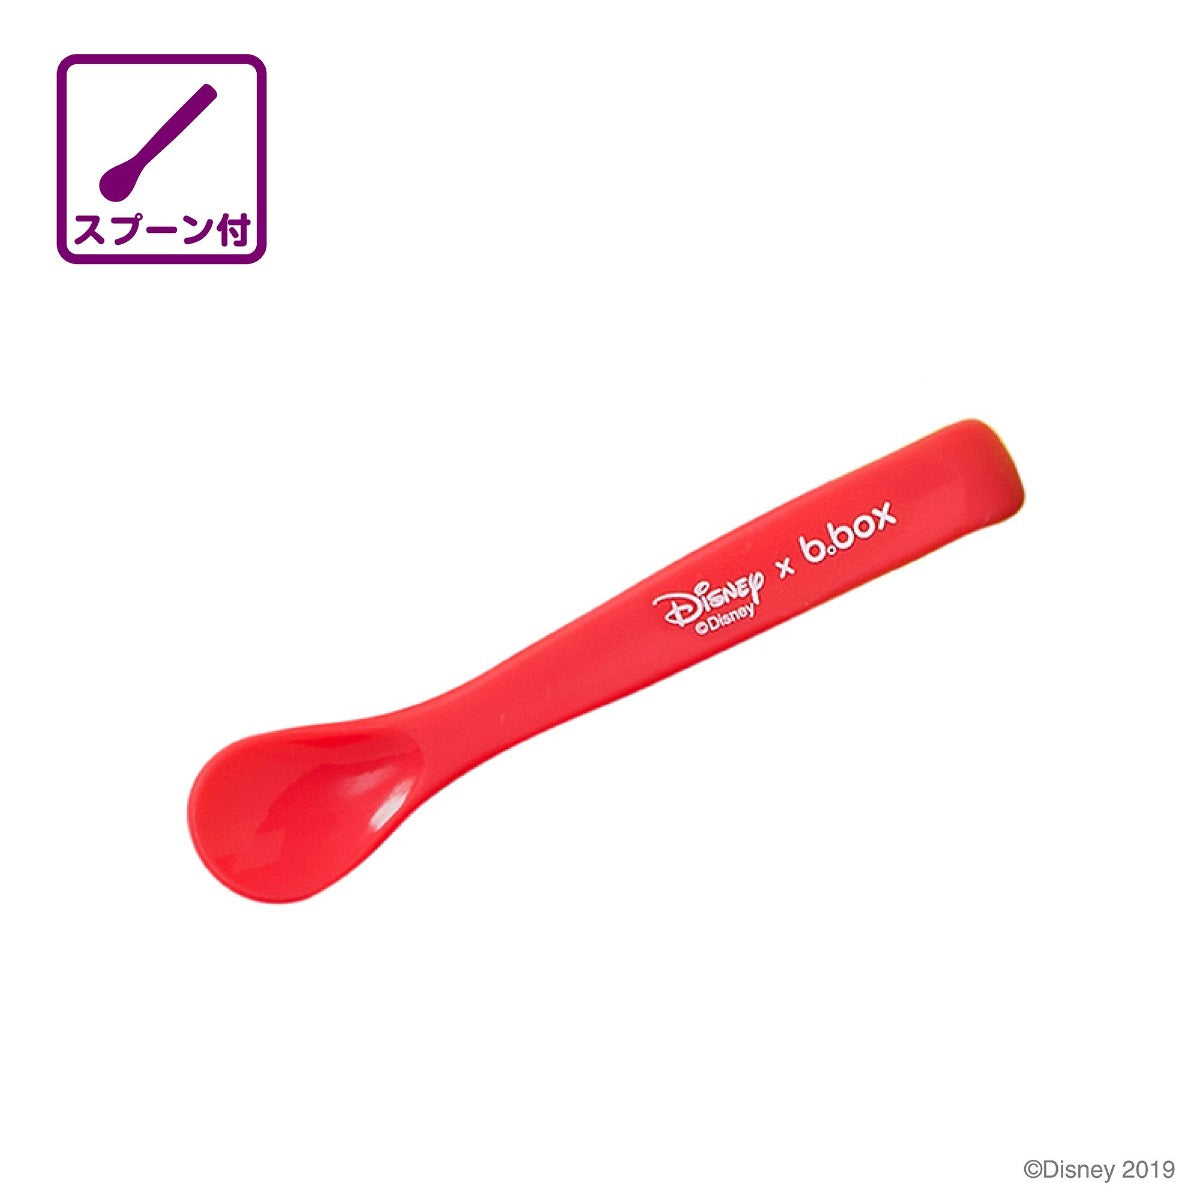 お食事エプロン travel bib+flexible spoon トラベルビブ Buzz – Japan